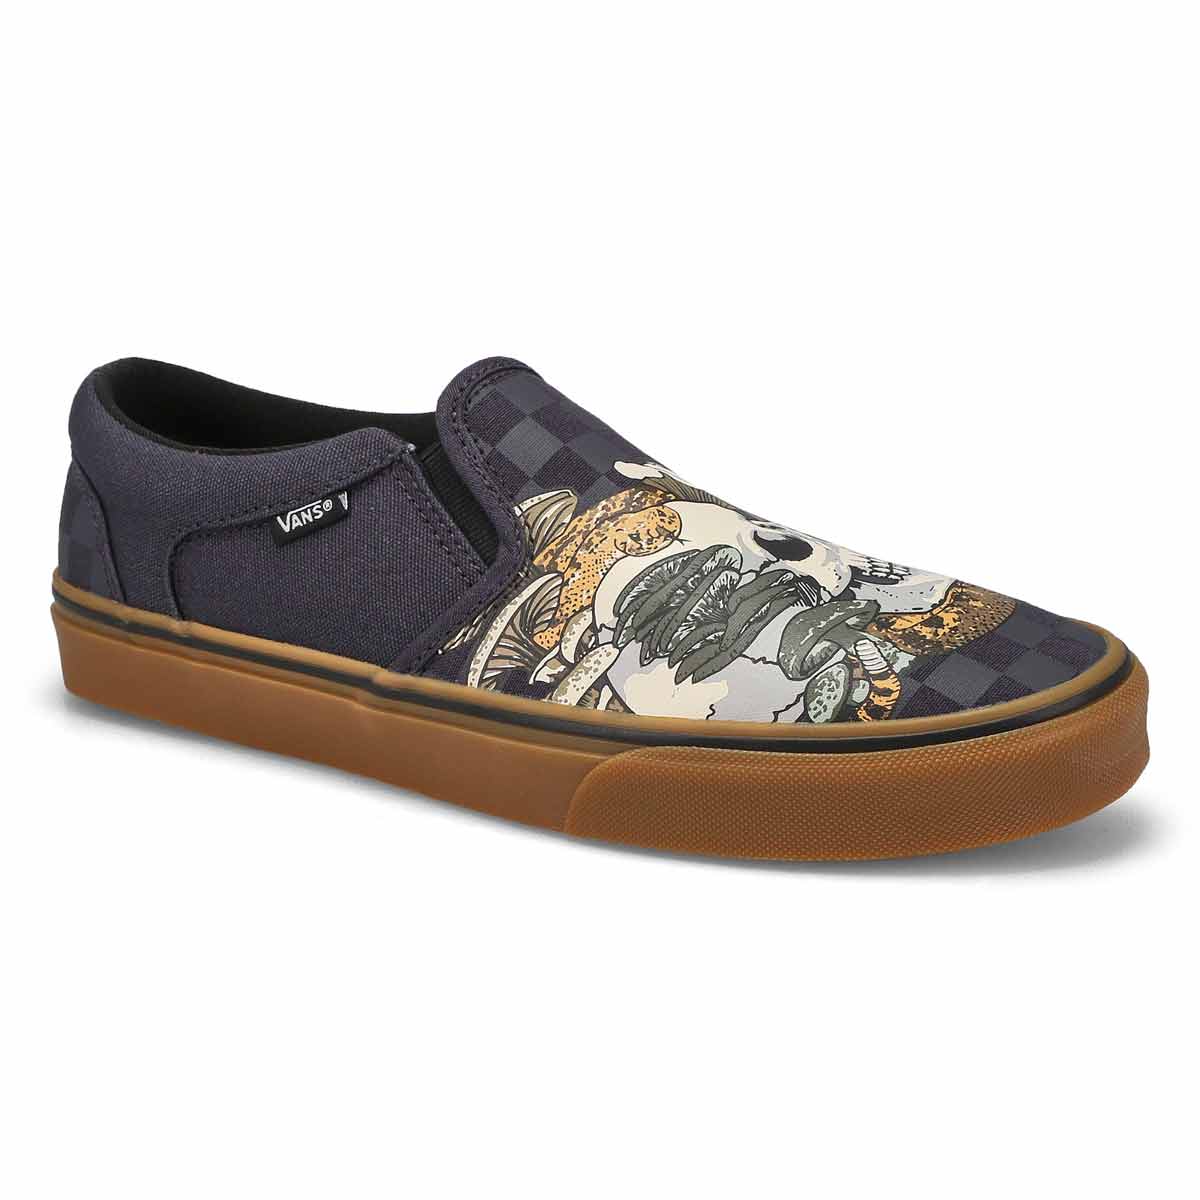 Vans Men's Asher Slip On Sneaker - Charcoal/G | SoftMoc.com